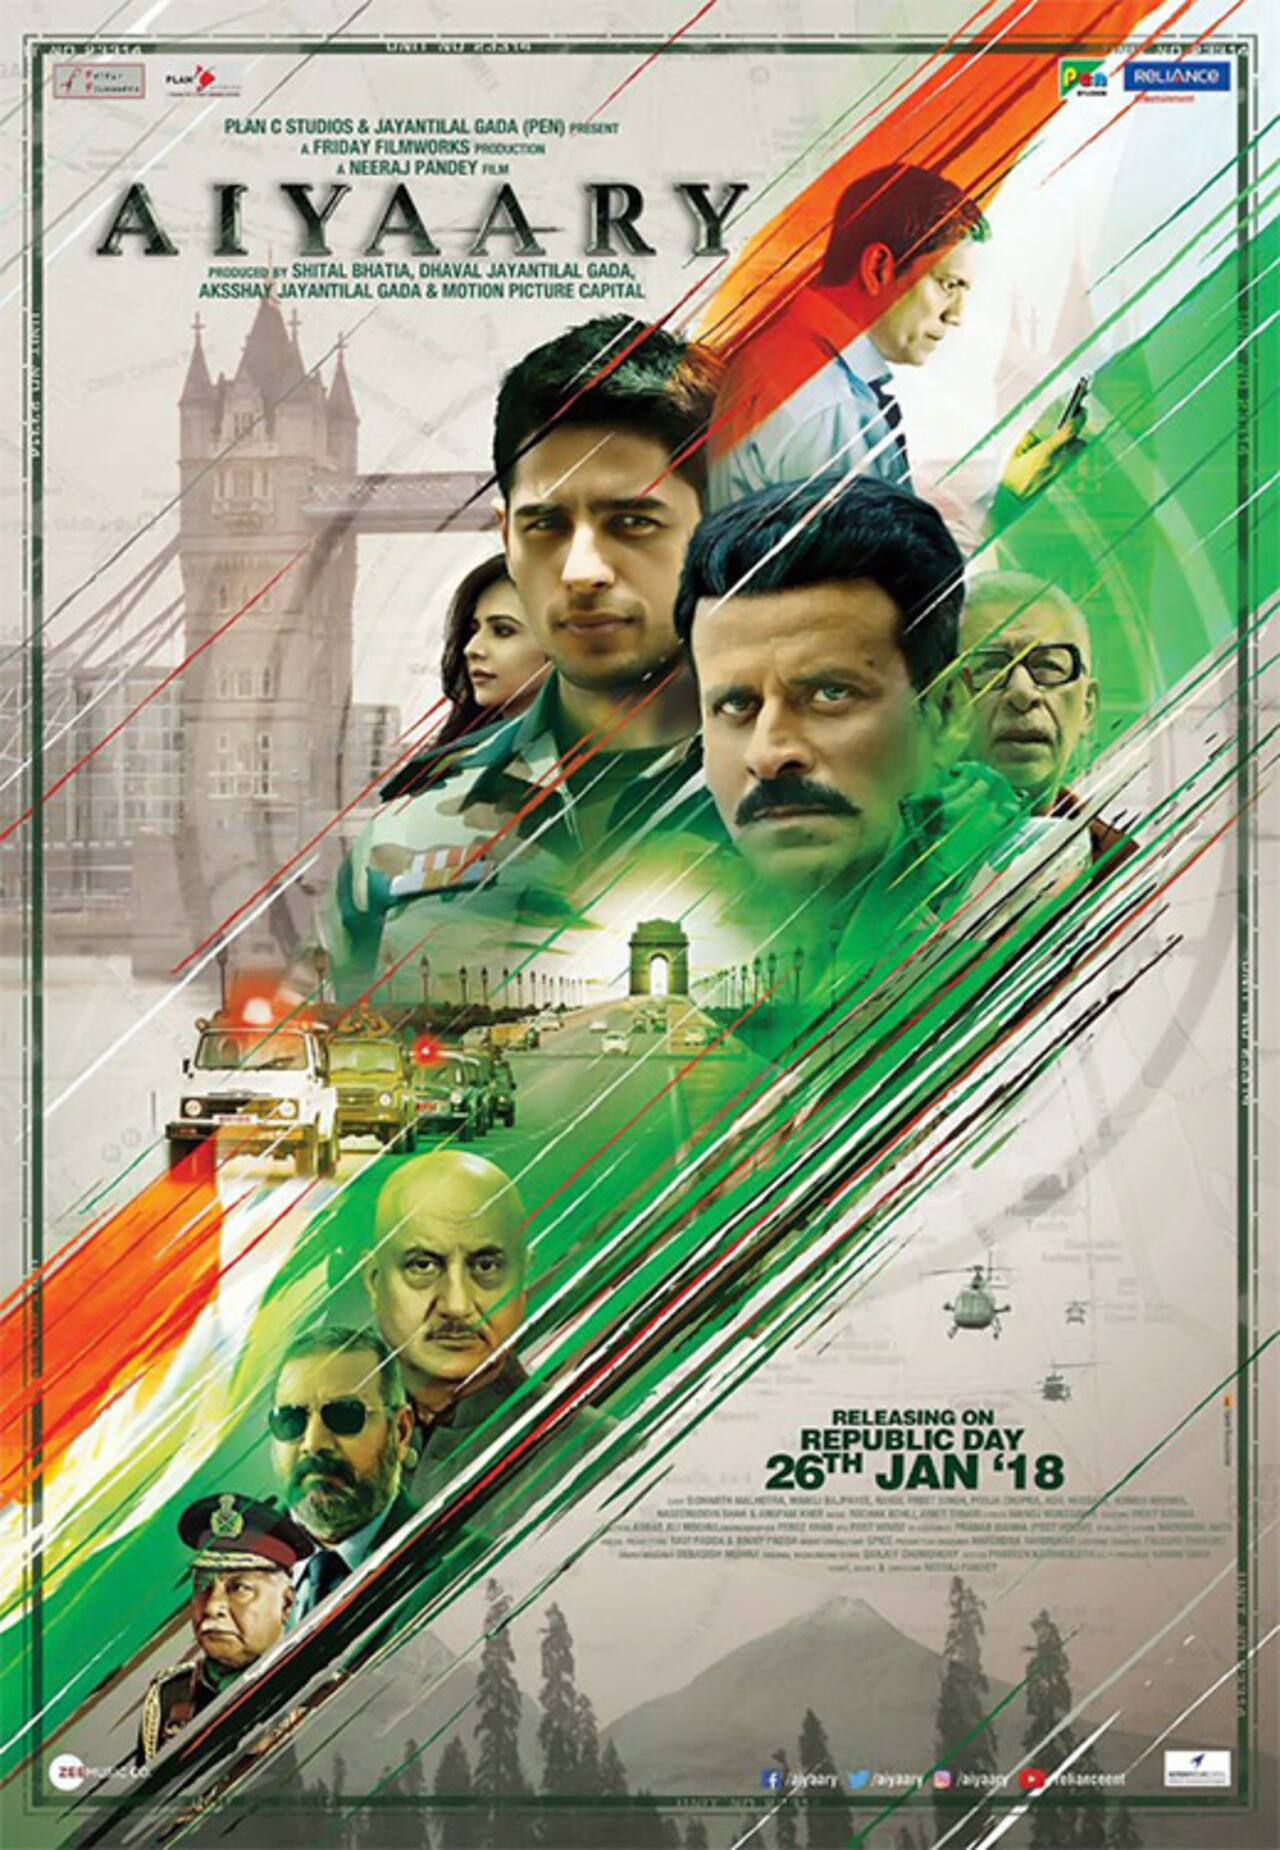 सिद्धार्थ मल्होत्रा और मनोज बाजपेयी की नई फिल्म अय्यारी का नया पोस्टर हुआ आउट !!